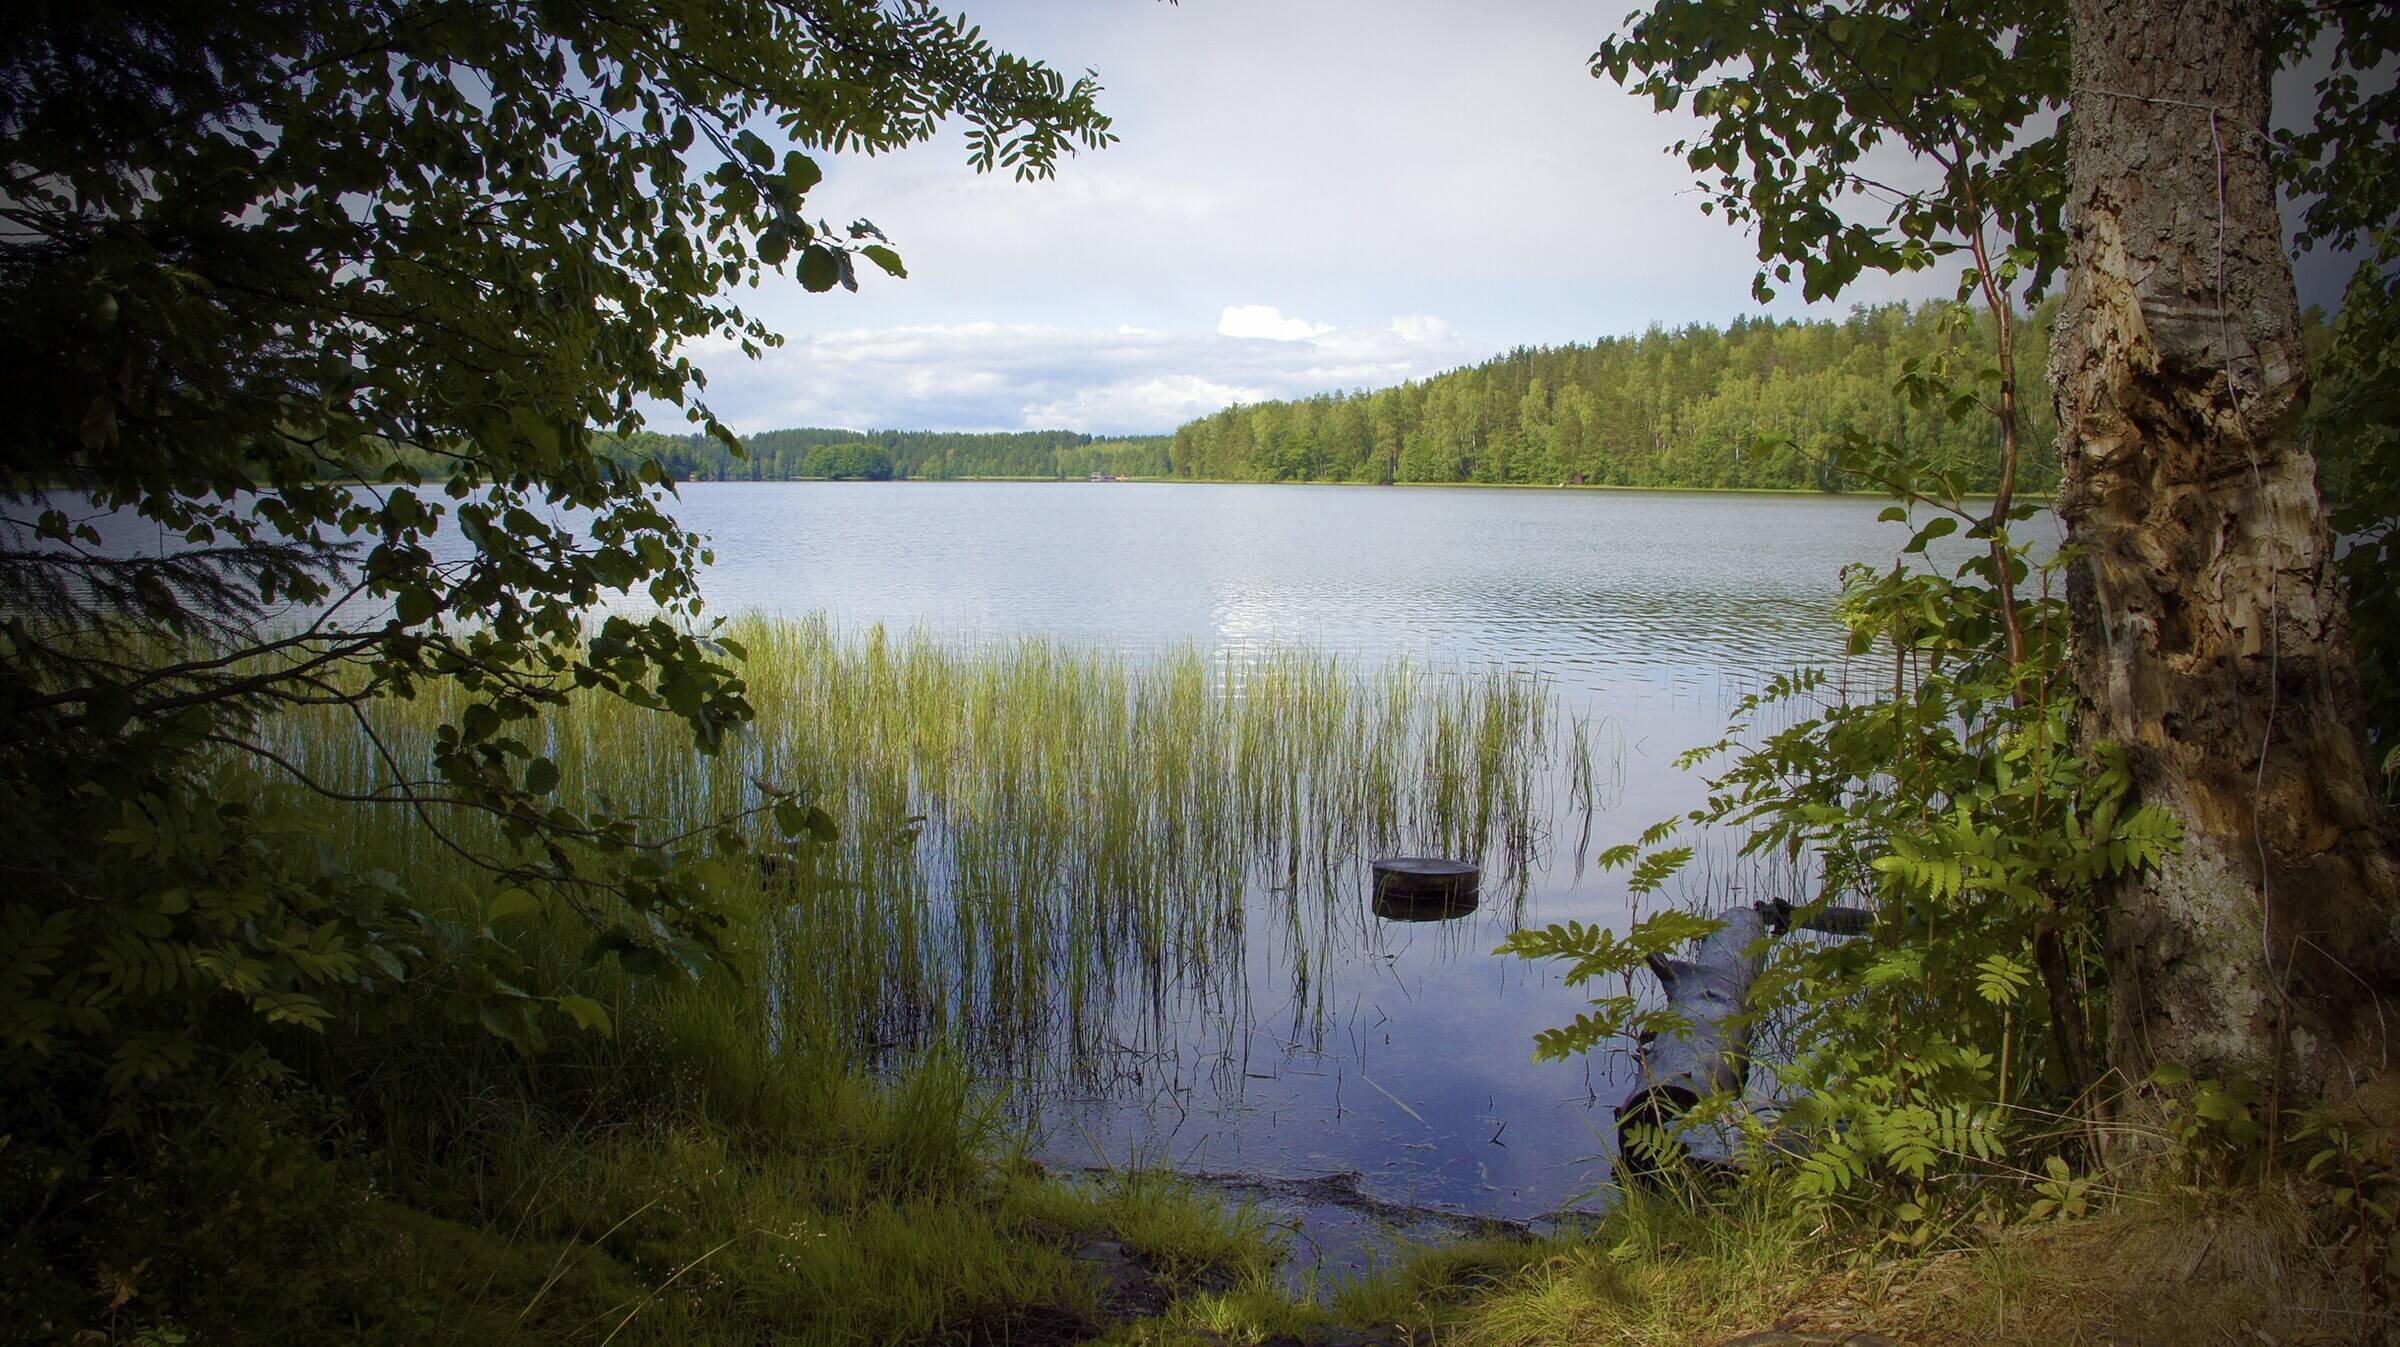 Лемболовское озеро. рыбалка 2020, отзывы, на карте, глубина, базы отдыха, фото, как добраться – туристер. ру